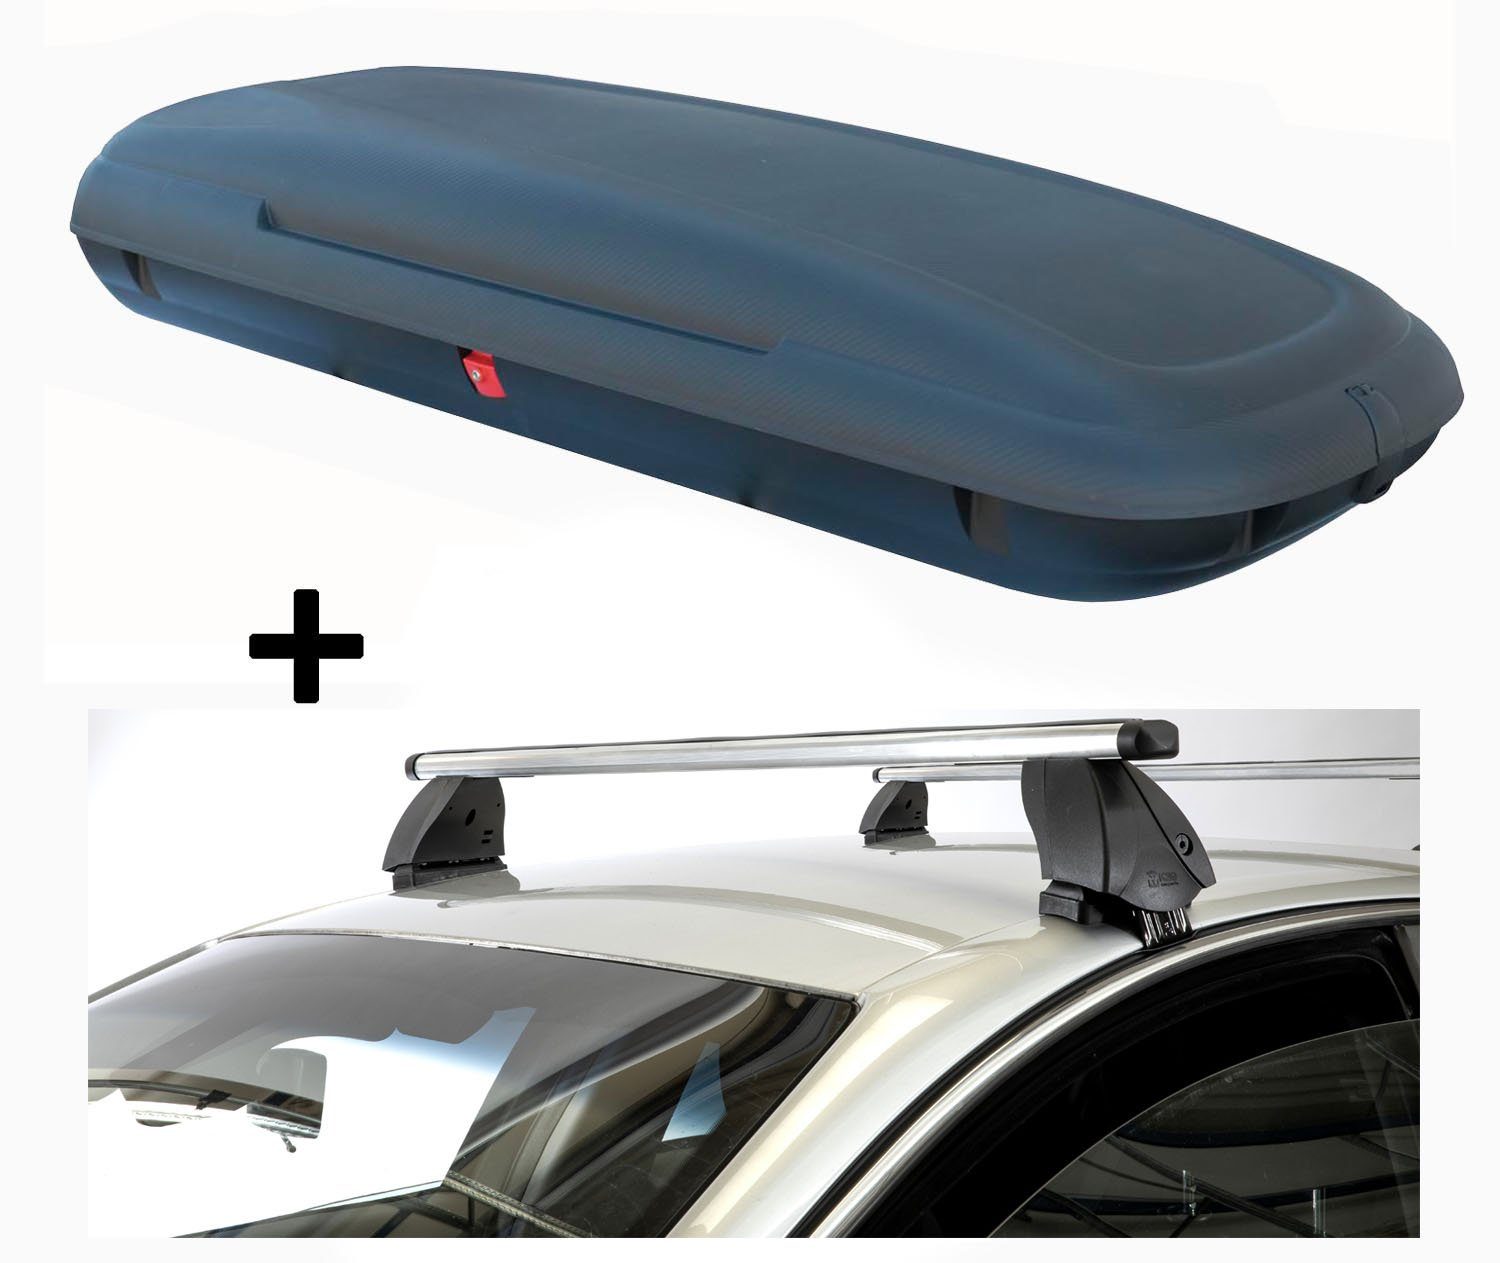 VDP Dachbox, (Für Ihren Seat kompatibel Dachträger Liter 480 Seat III Ibiza Dachträger mit Aluminium carbonlook Dachbox VDPCA480 02-09 III und Dachbox + Ibiza im PRO K1 Set), 02-09